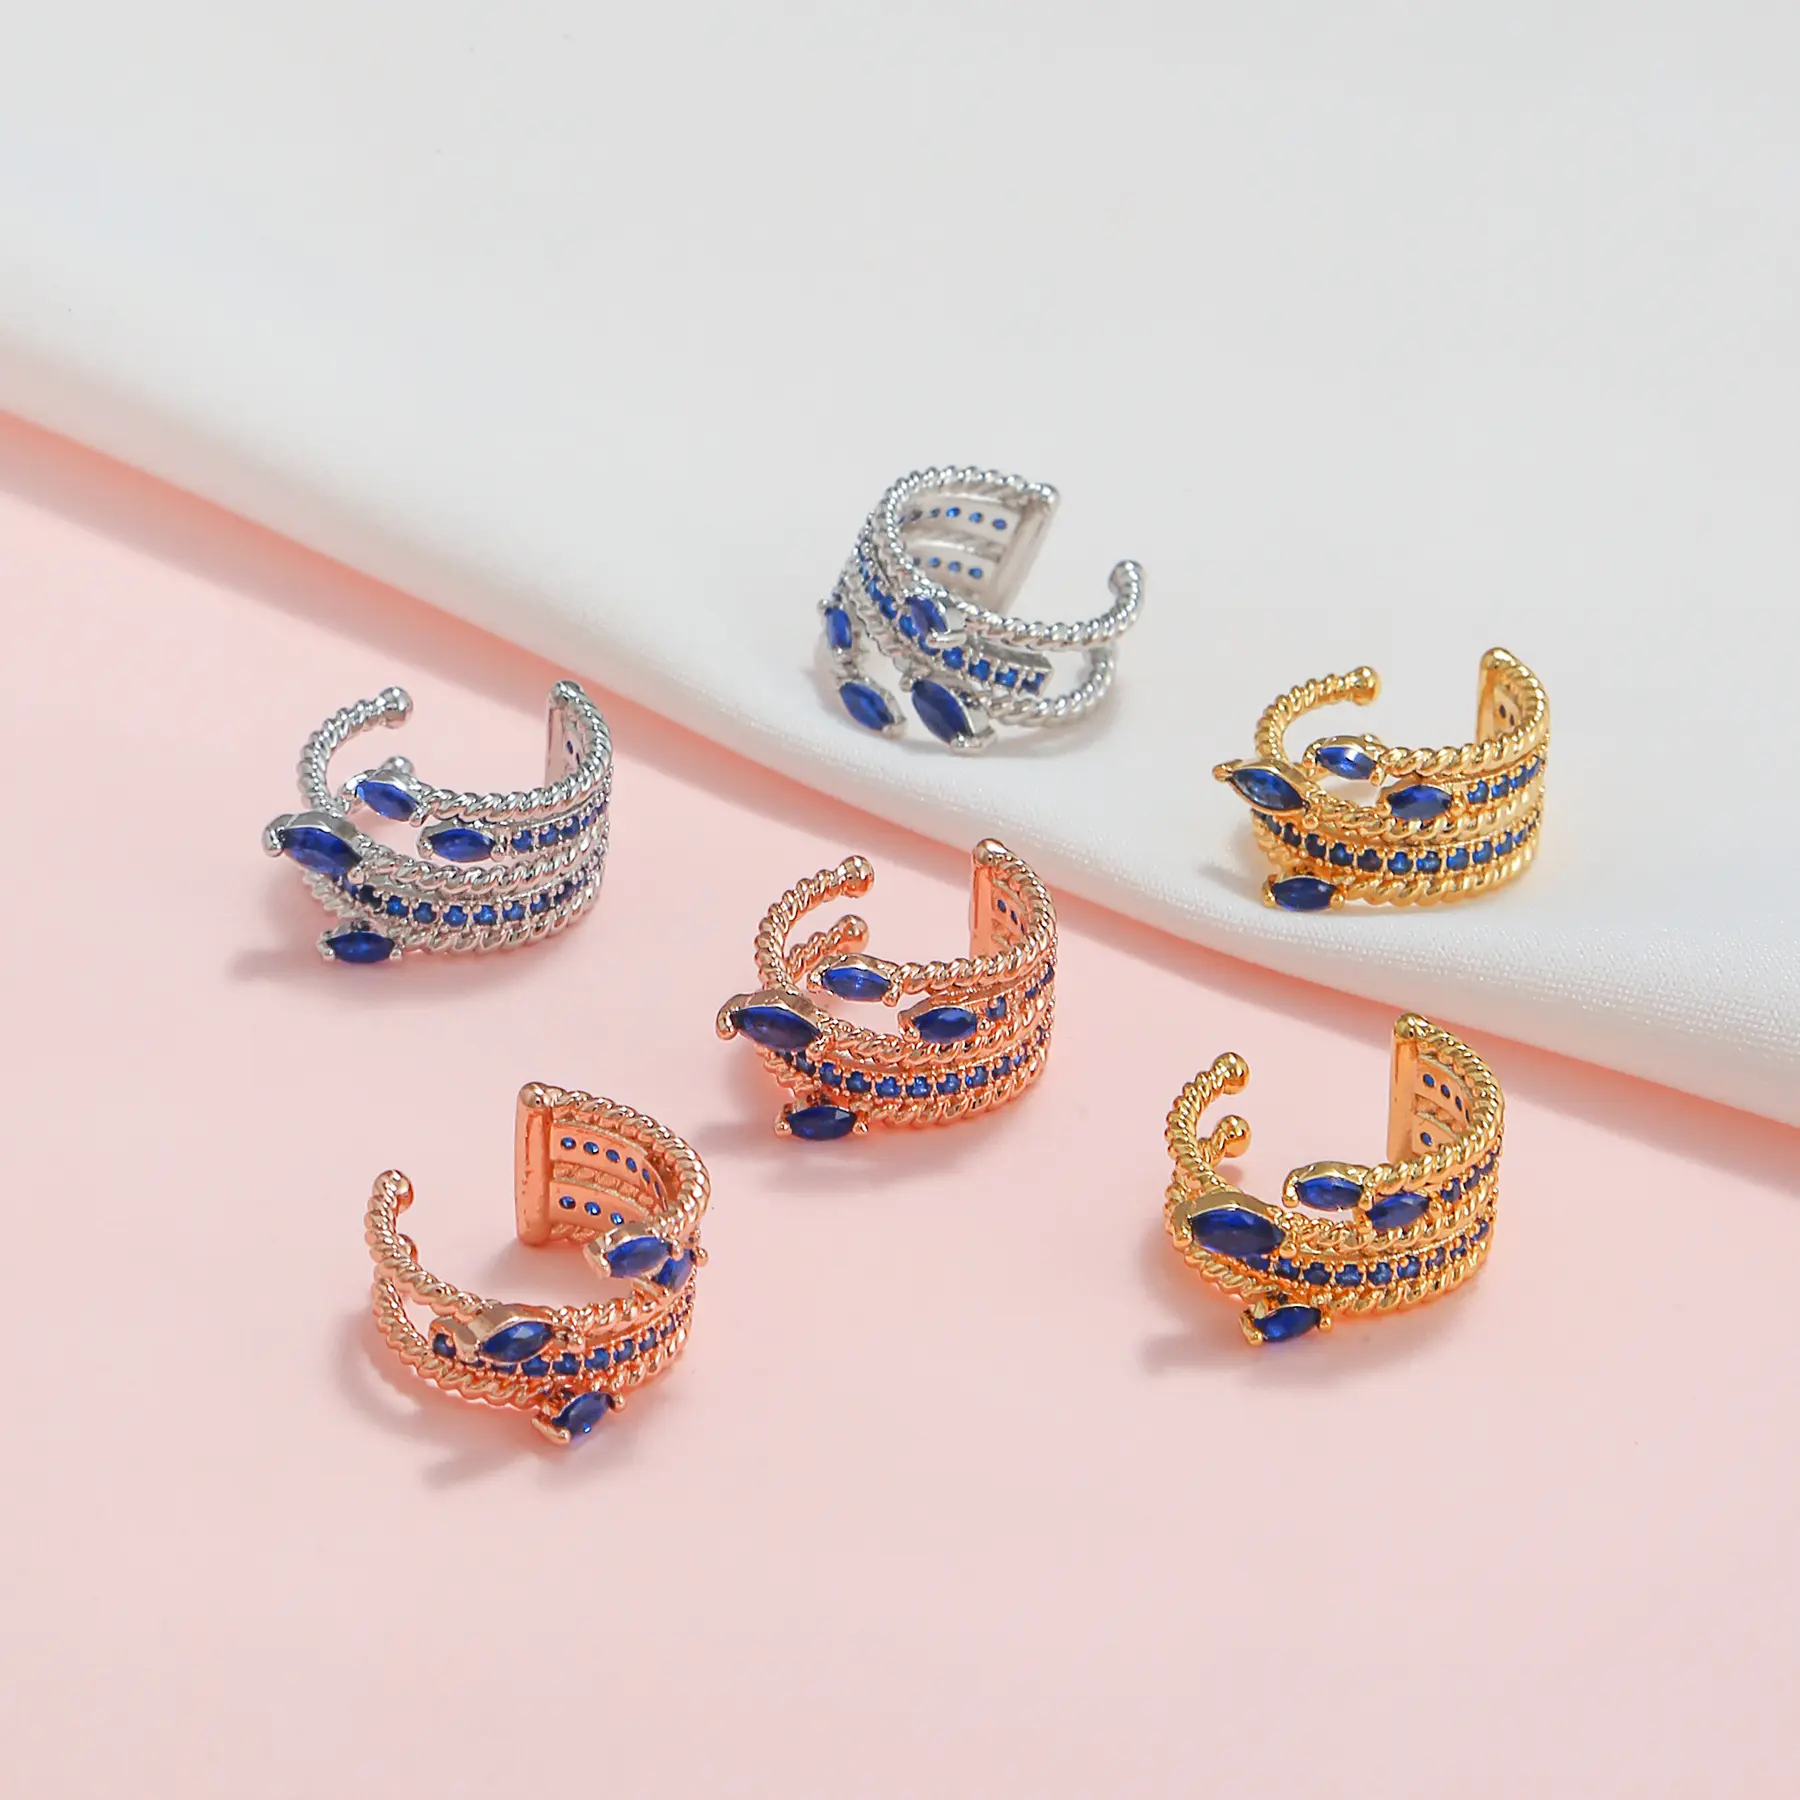 Heiße geometrische Edelstein Ohr Knochen Clip Mode 18 Karat Roségold Großhandel Frauen Diamanten Metall Clip-On Ohrring ohne Ohrlöcher